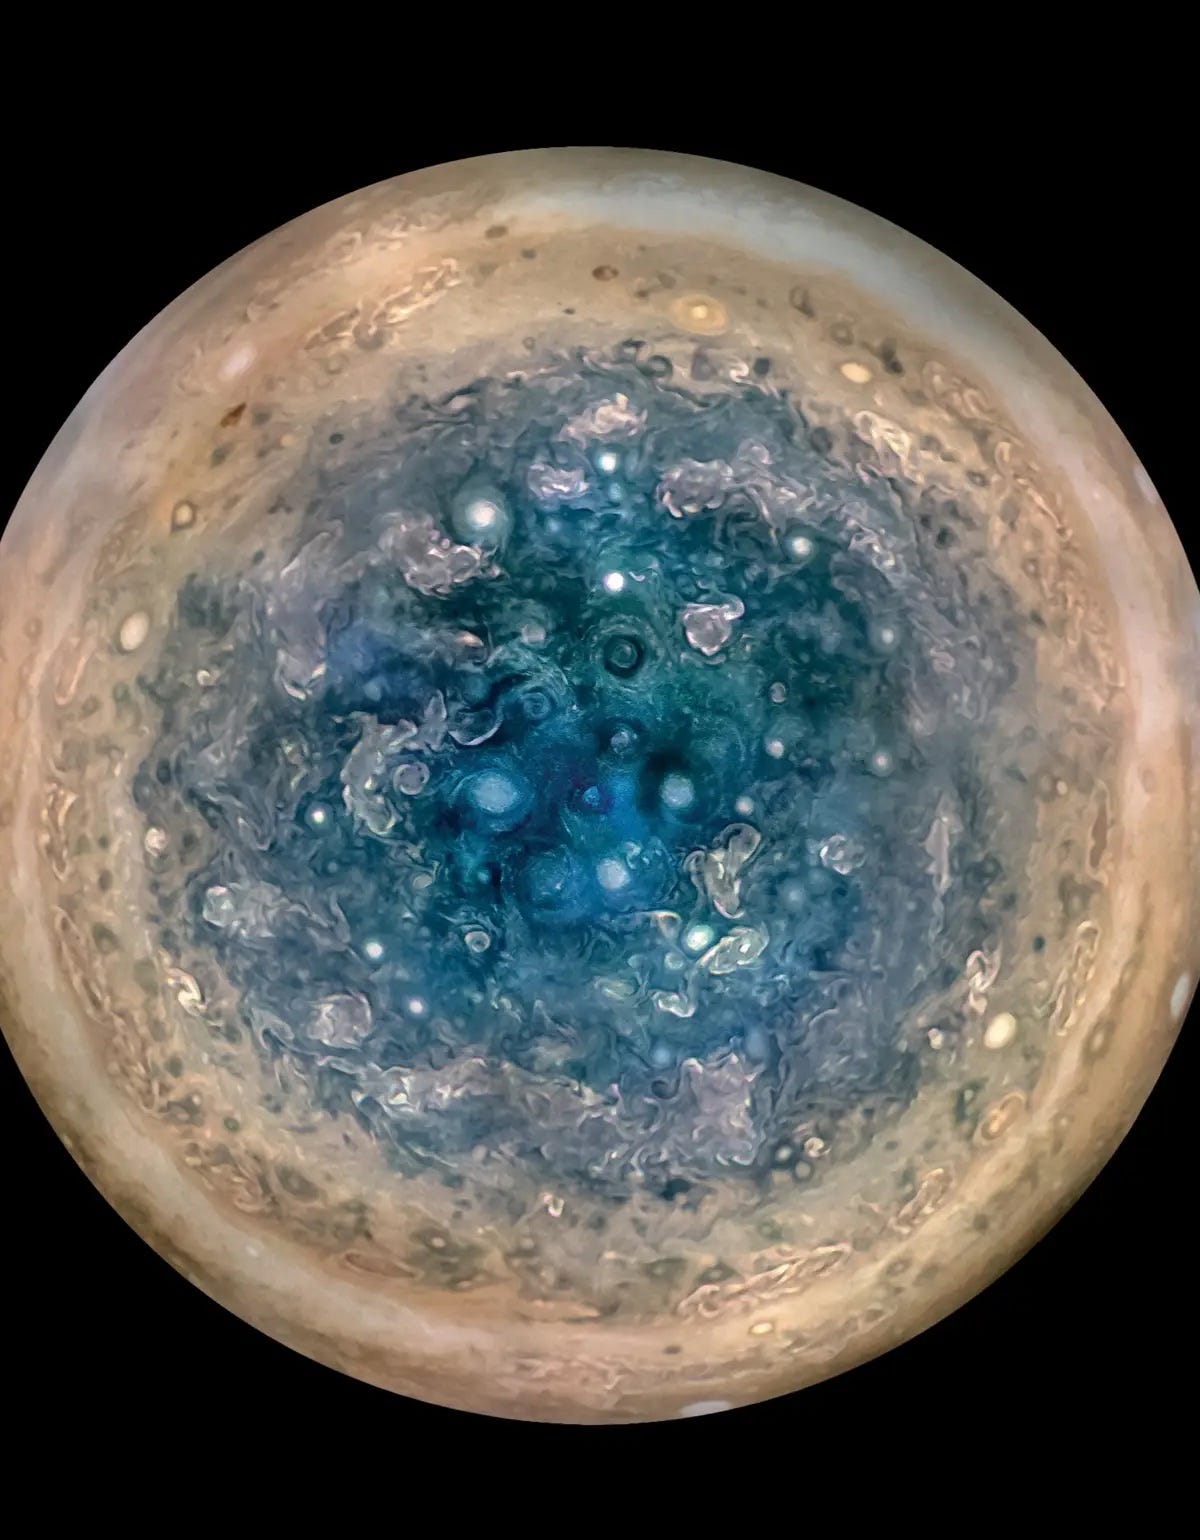 Jupiters Südpol vor der Dunkelheit des Weltraums fotografiert.